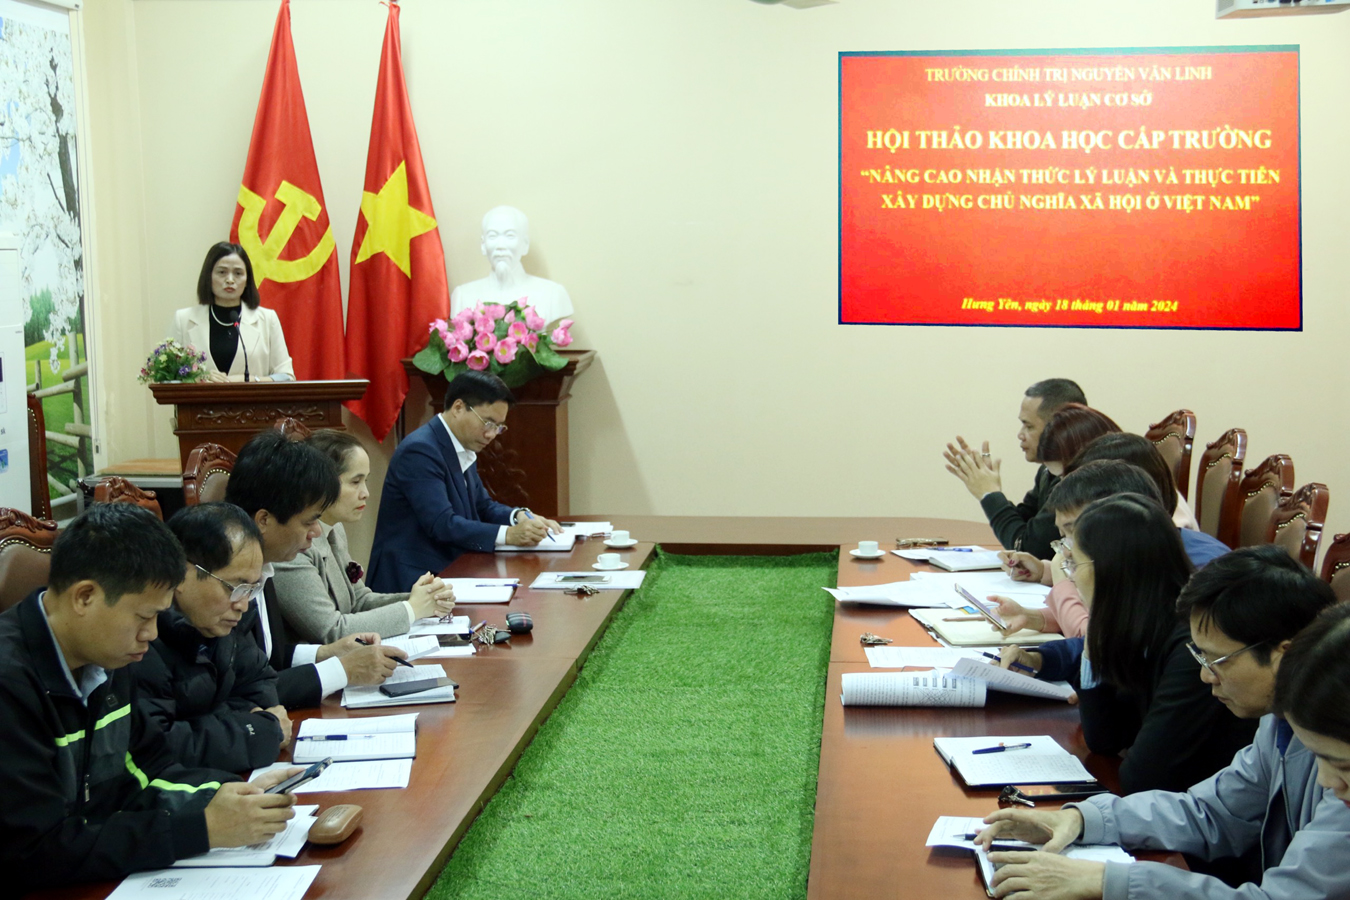 Hội thảo khoa học cấp trường cuộc 01 “Nâng cao nhận thức lý luận và thực tiễn xây dựng chủ nghĩa xã hội ở Việt Nam”